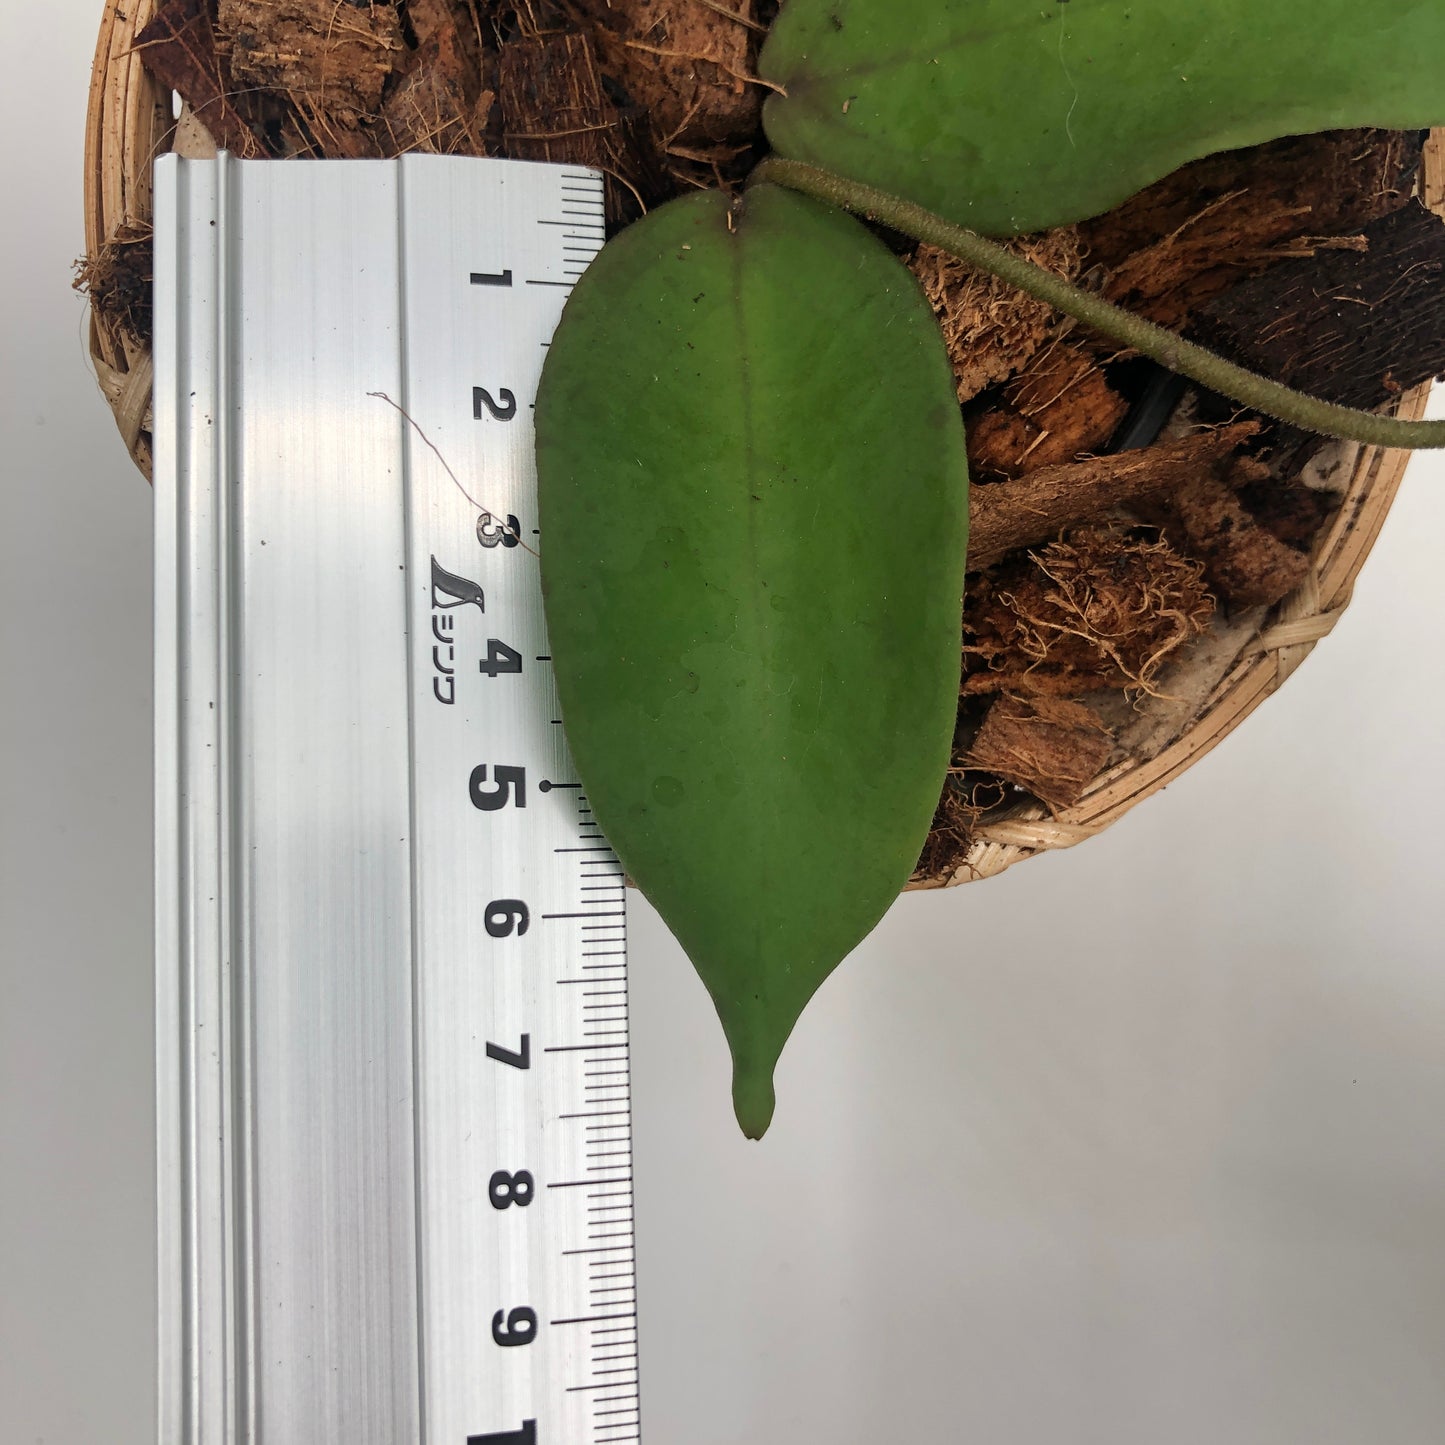 Hoya Sangguensis - Small